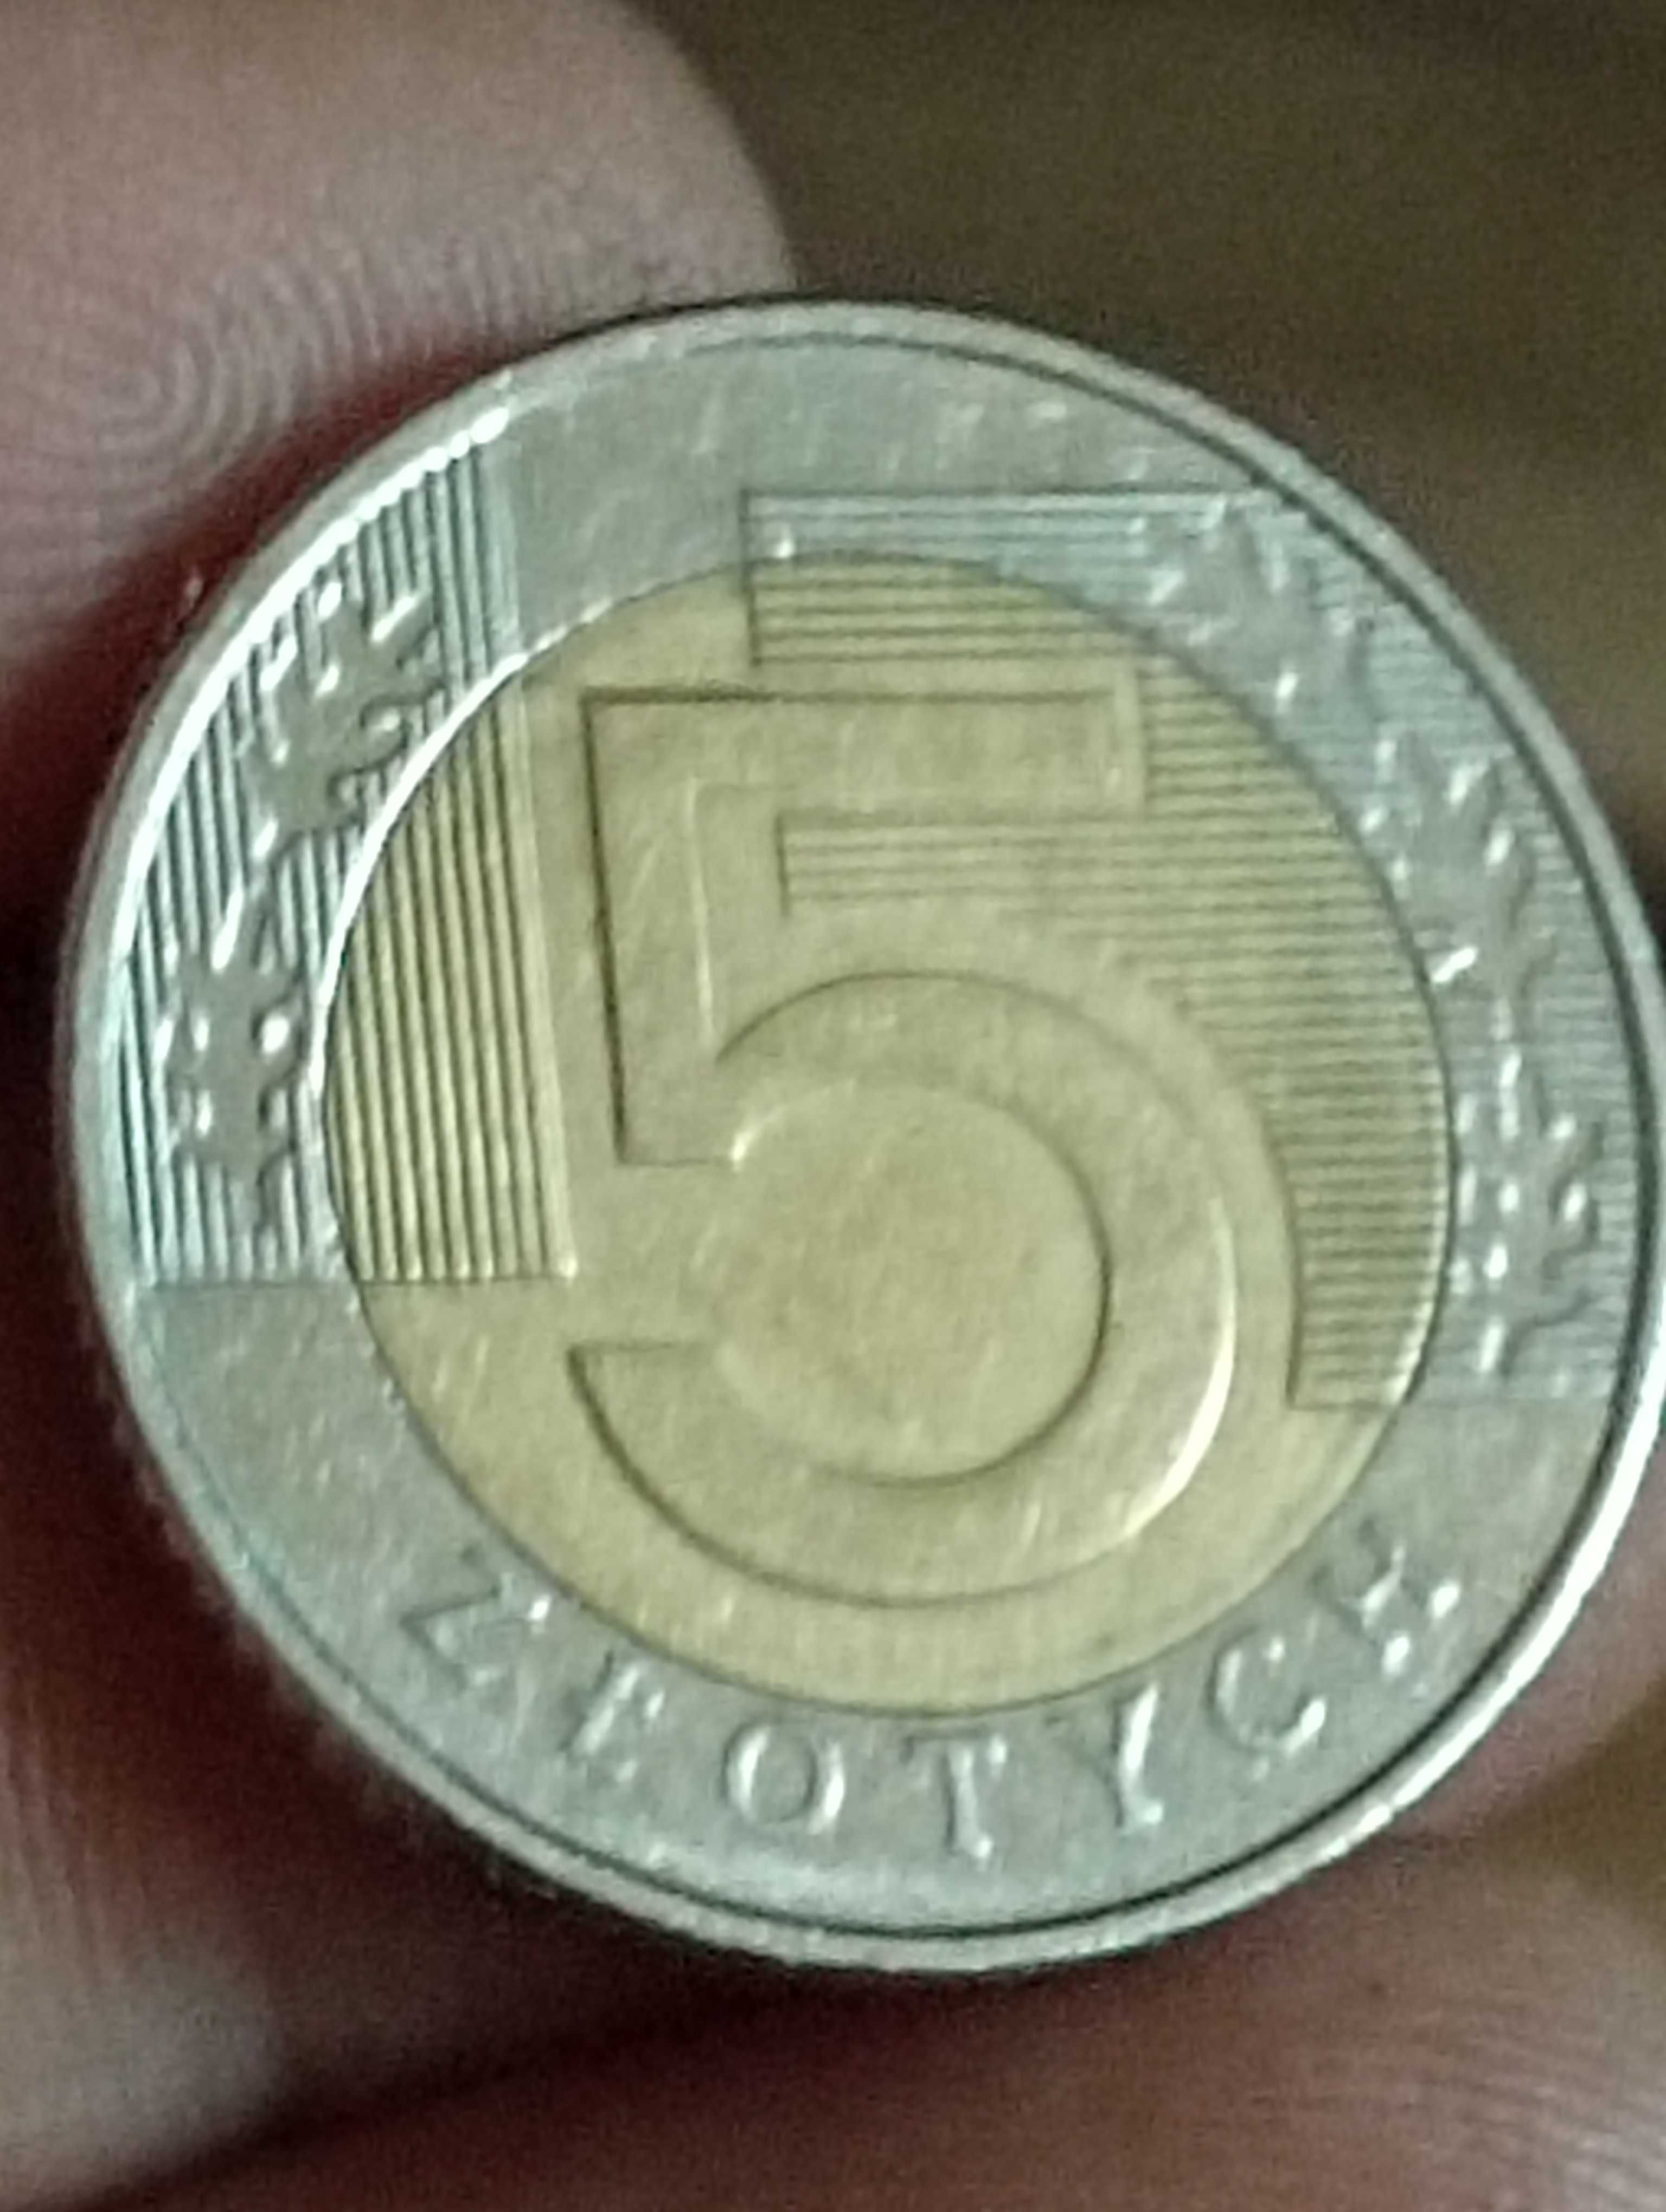 Sprzedam monete 5 zloty 2009 rok